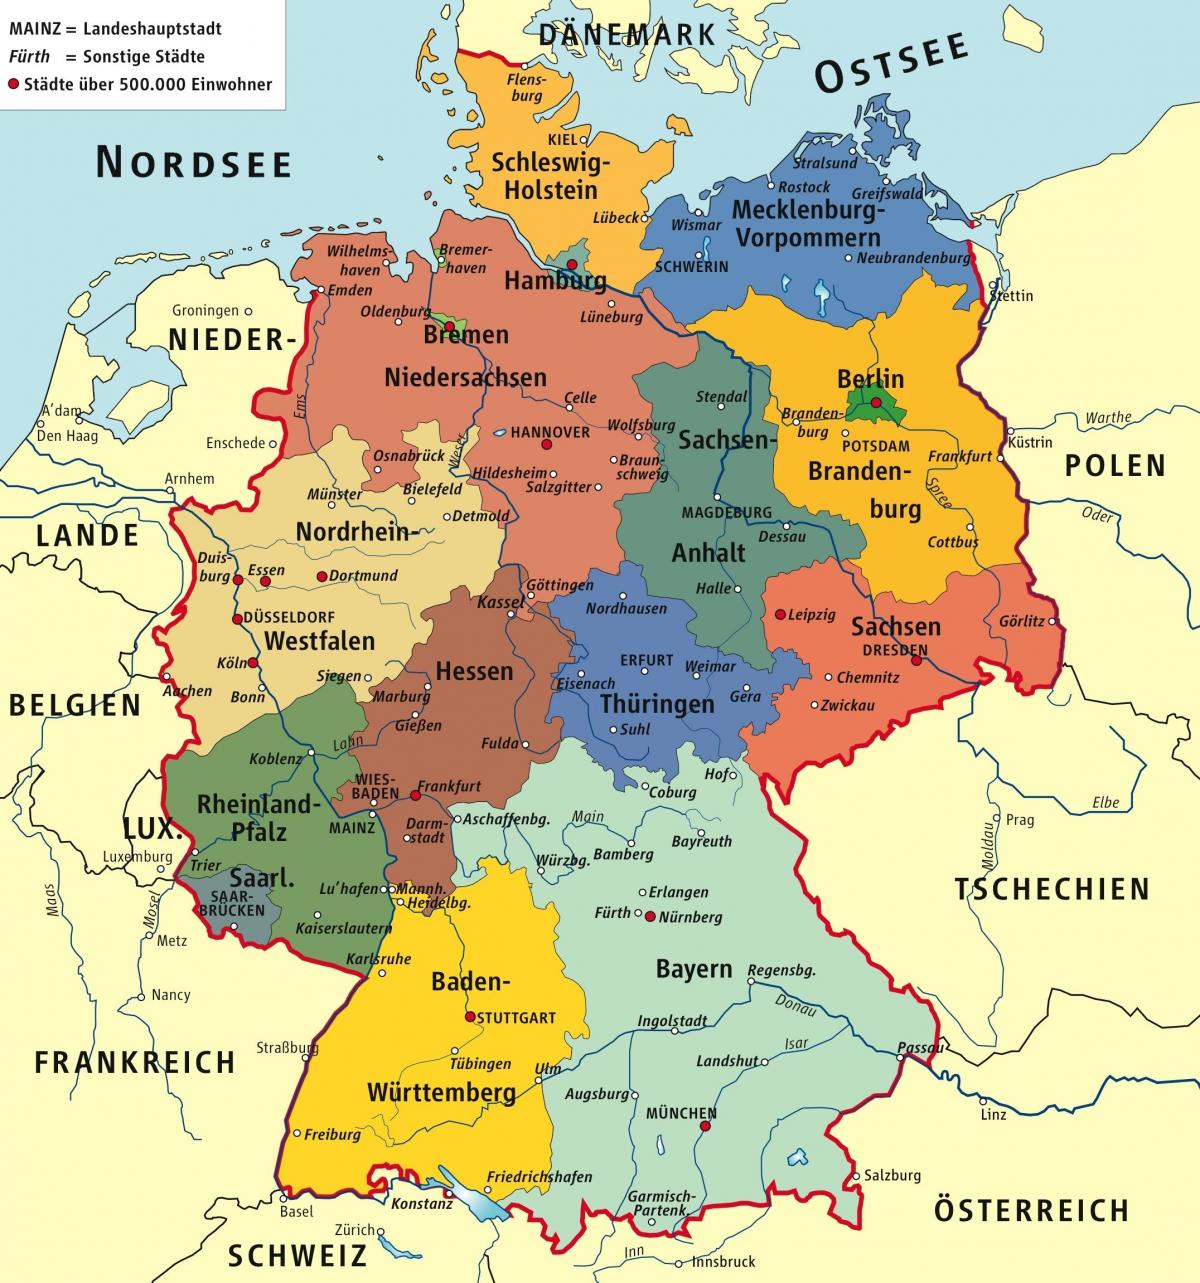 الخريطة الإدارية لألمانيا